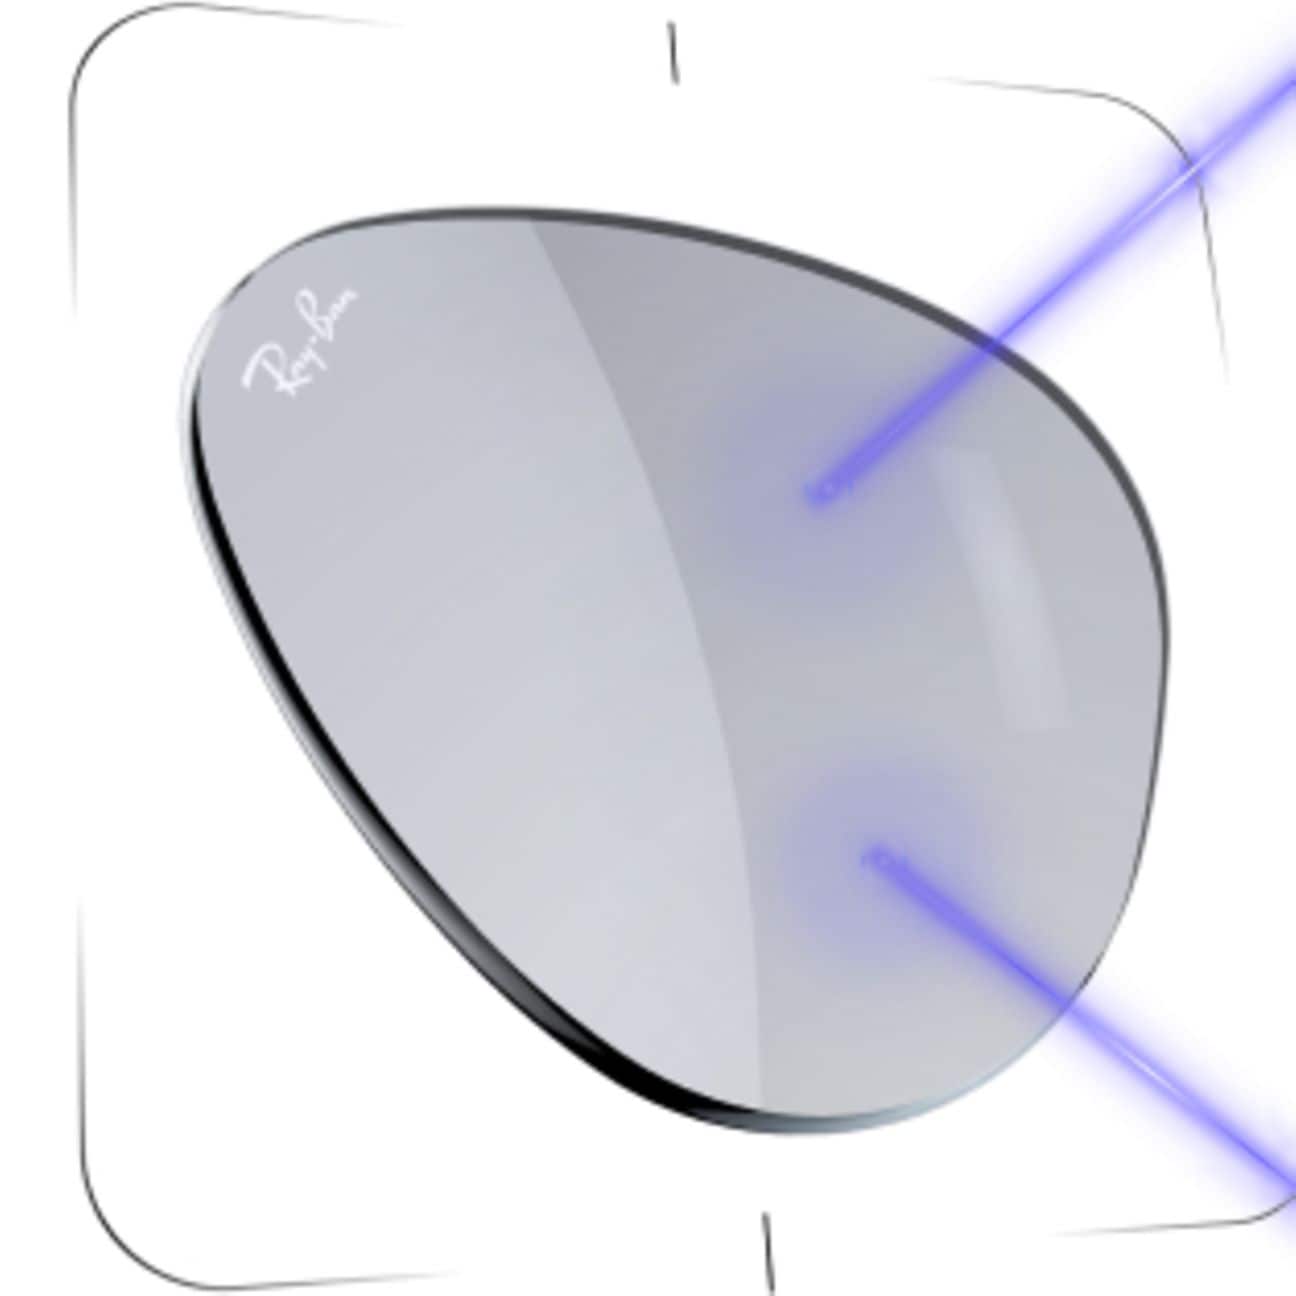 Proteção de luz AVANÇADA-Nossas lentes transparentes, solares e sensíveis à luz trazem as últimas inovações para cada estilo de vida.